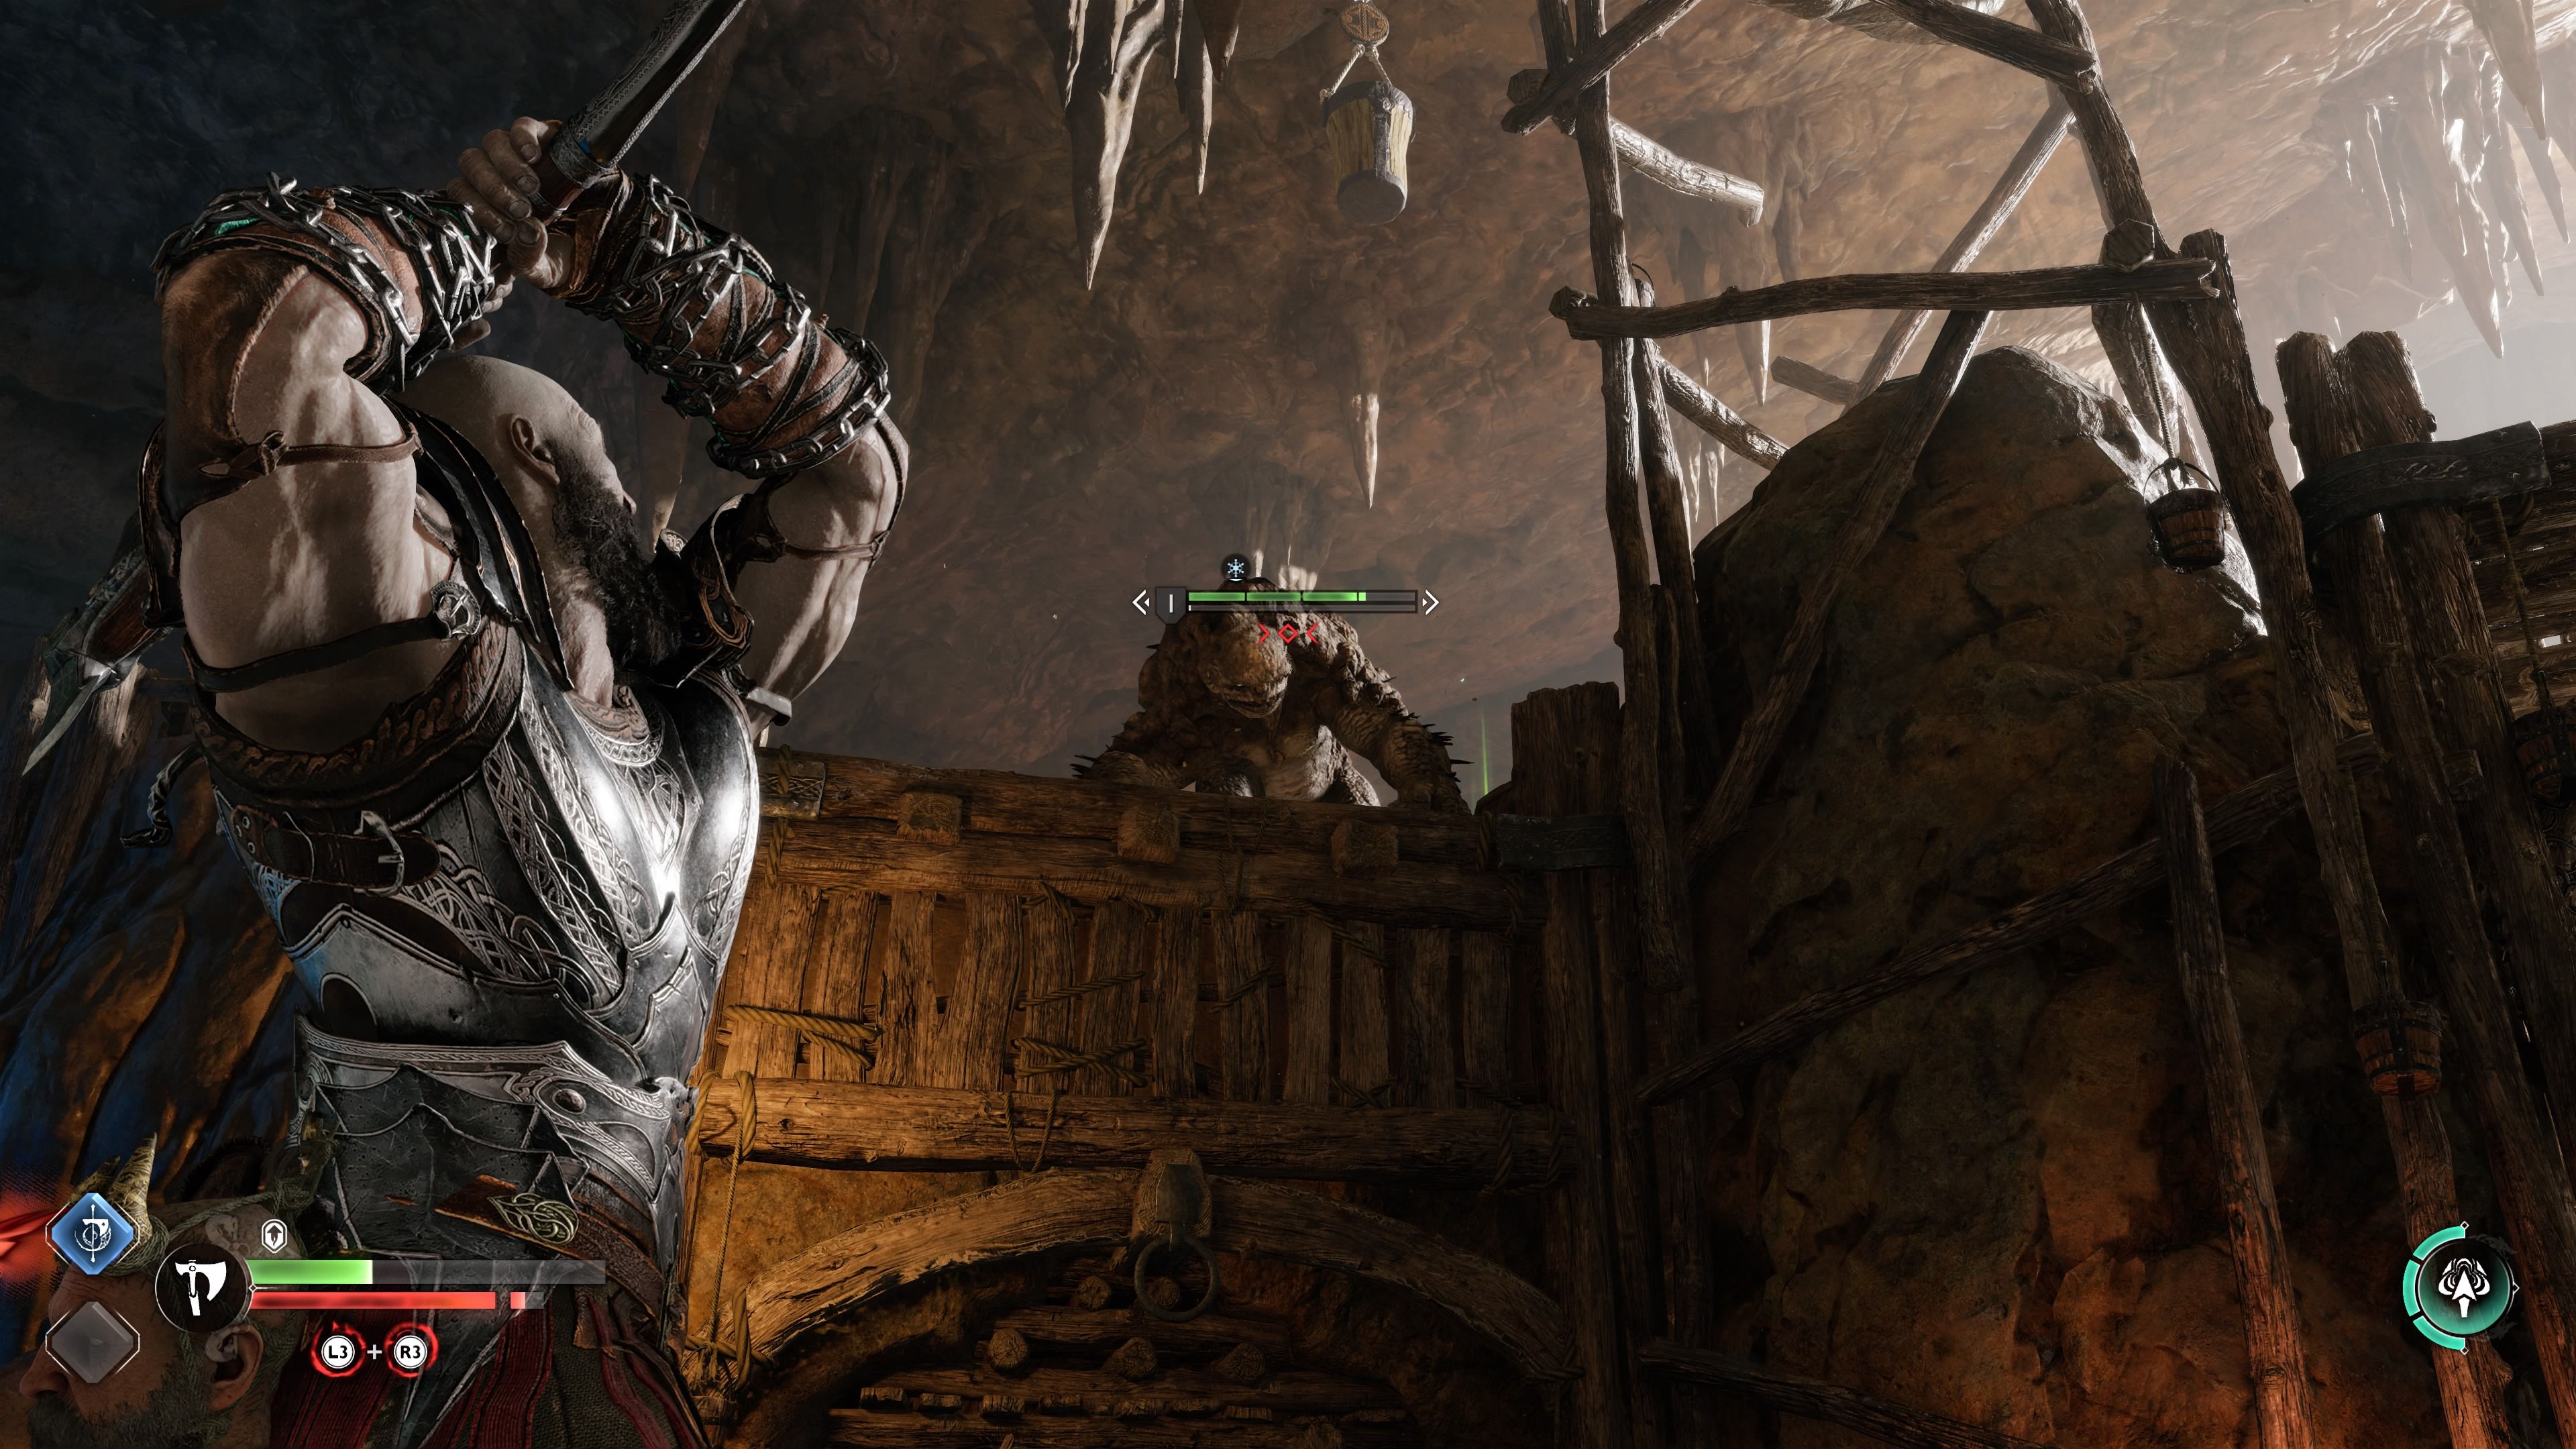 Análisis técnico de God of War Ragnarok en PS5 y PS4 Pro